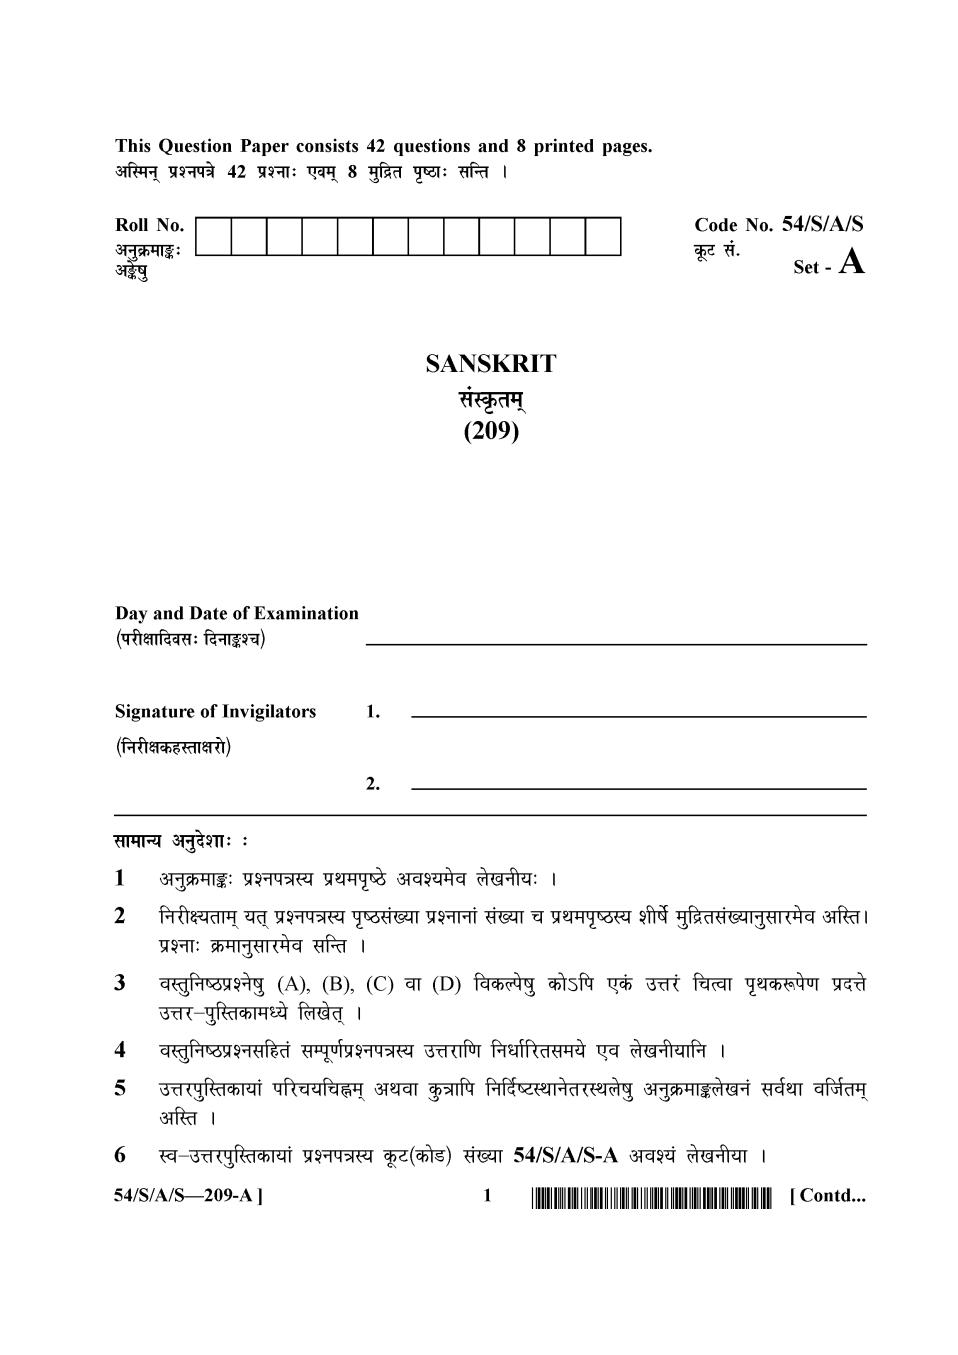 NIOS Class 10 Question Paper Apr 2017 - Sanskrit - Page 1